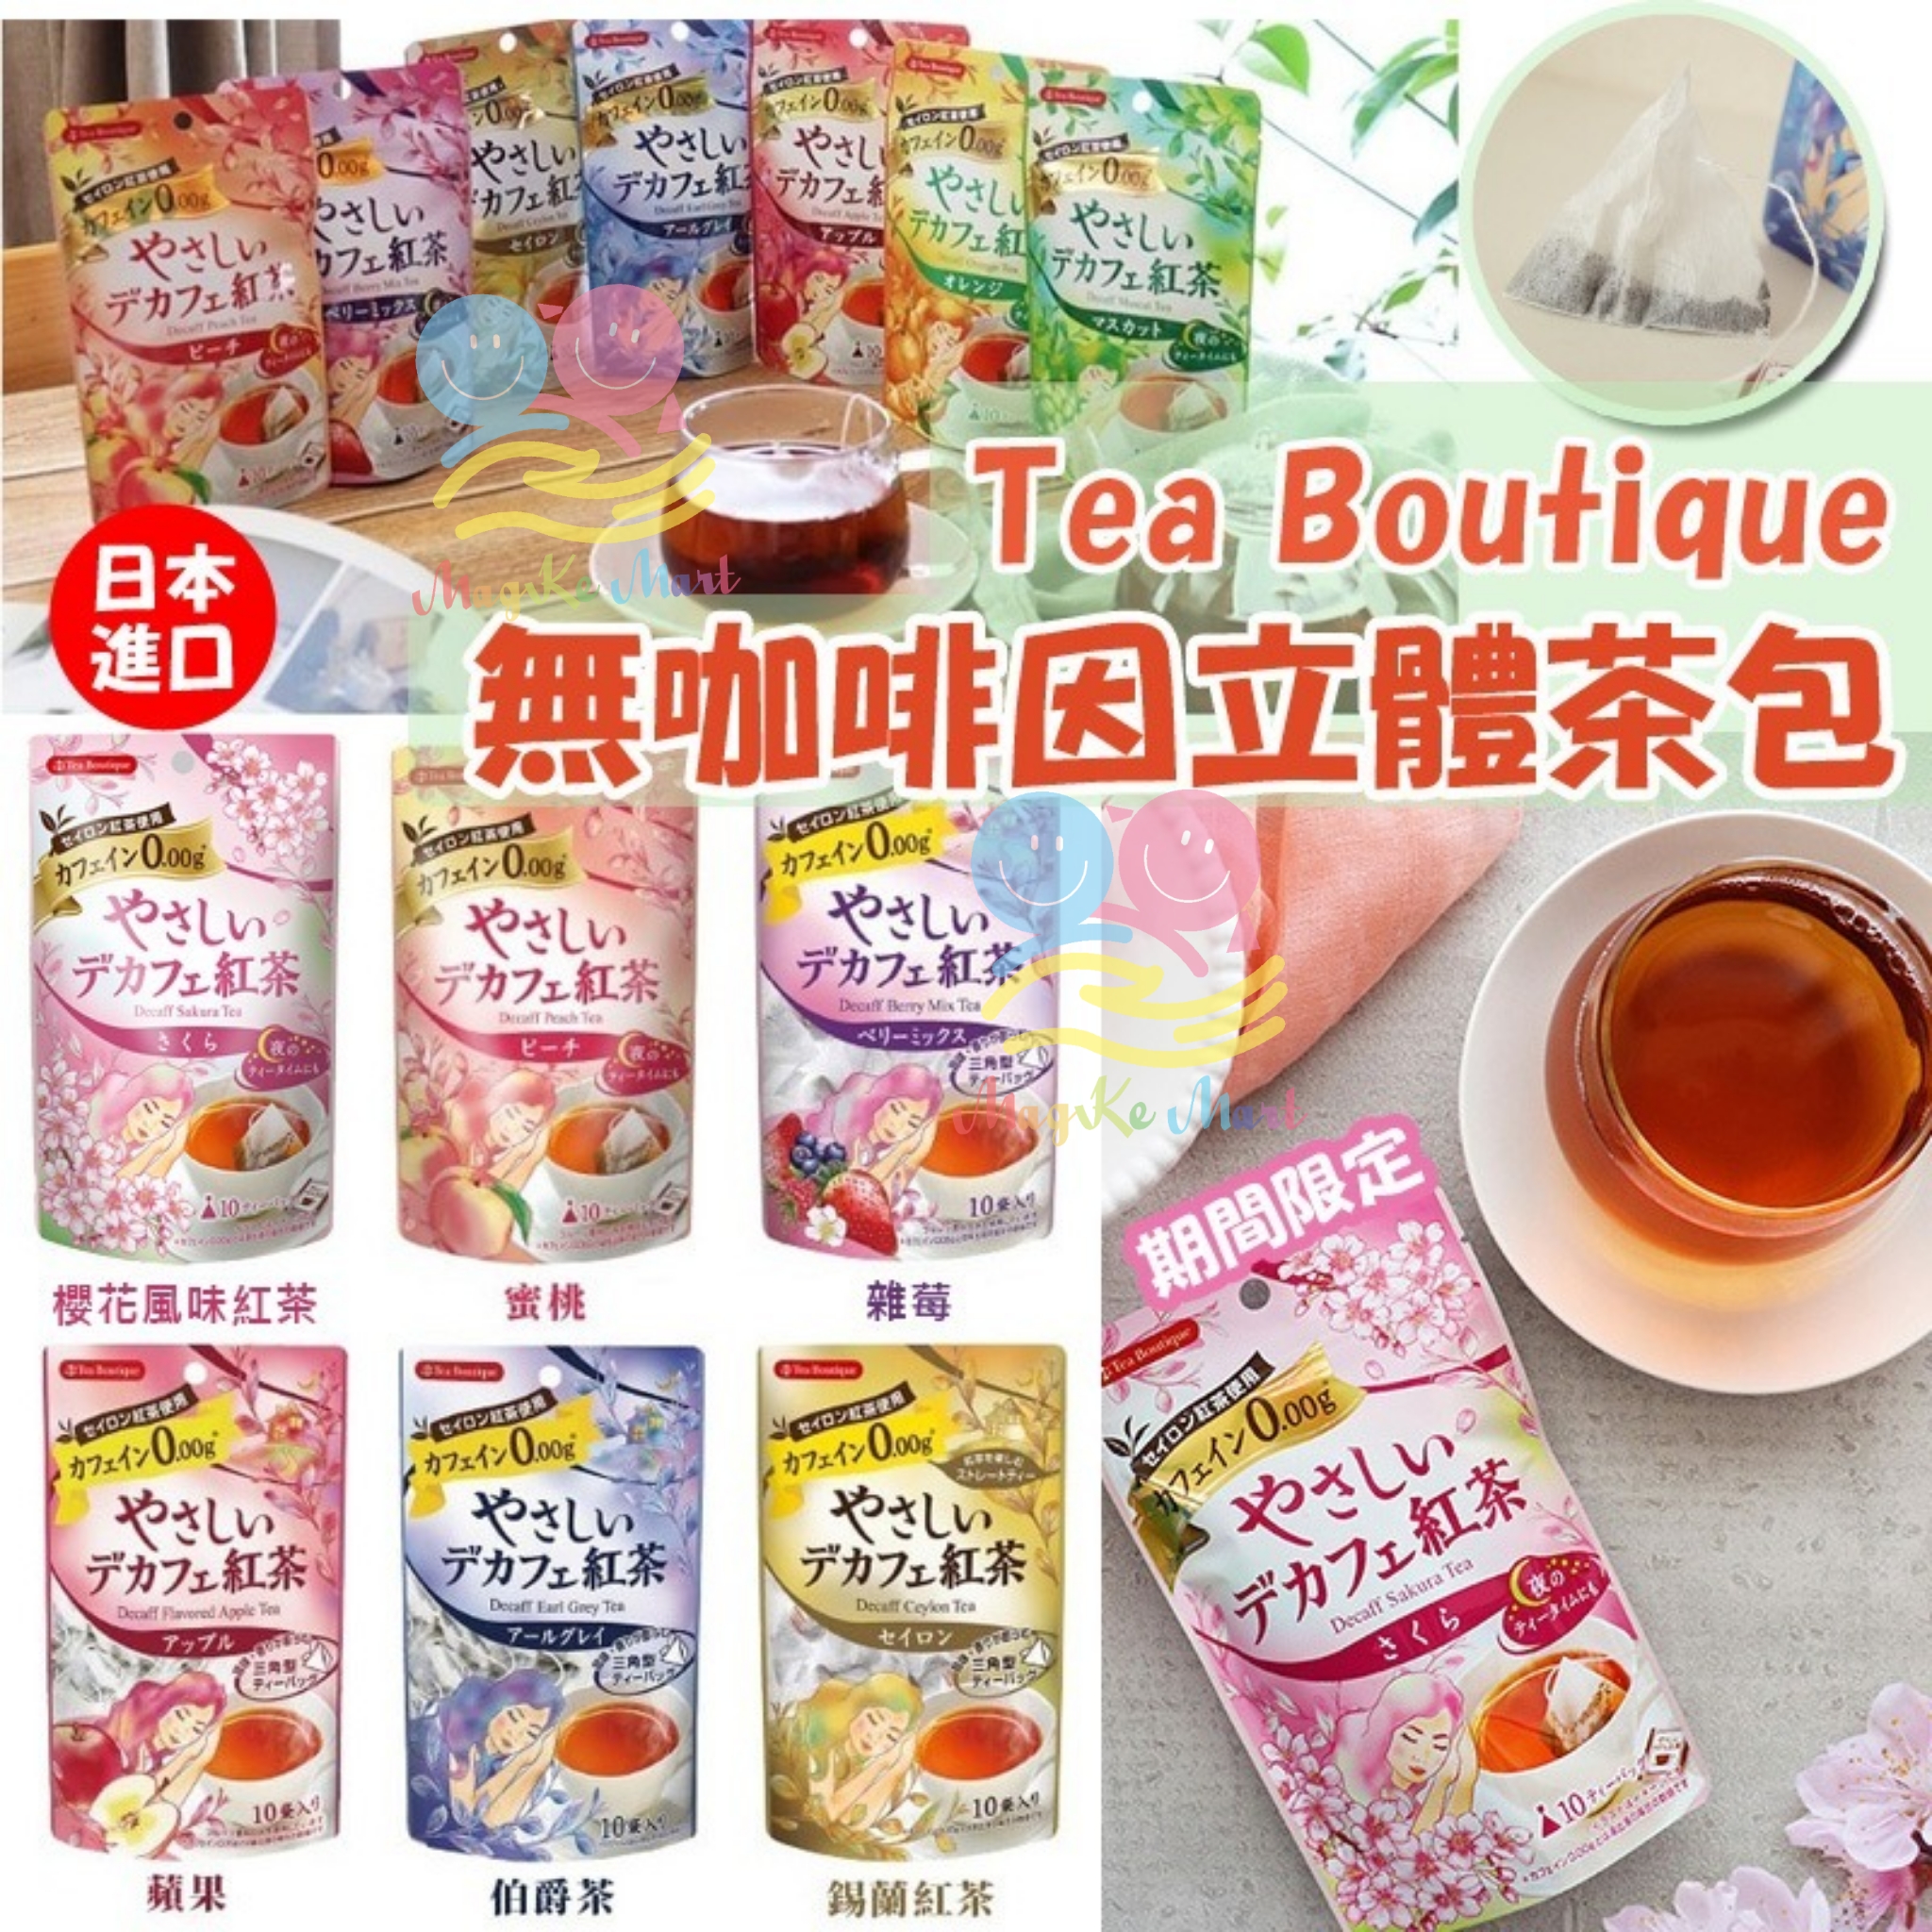 日本 Tea Boutique 無咖啡因立體茶包(1包10個) (B) 蜜桃風味